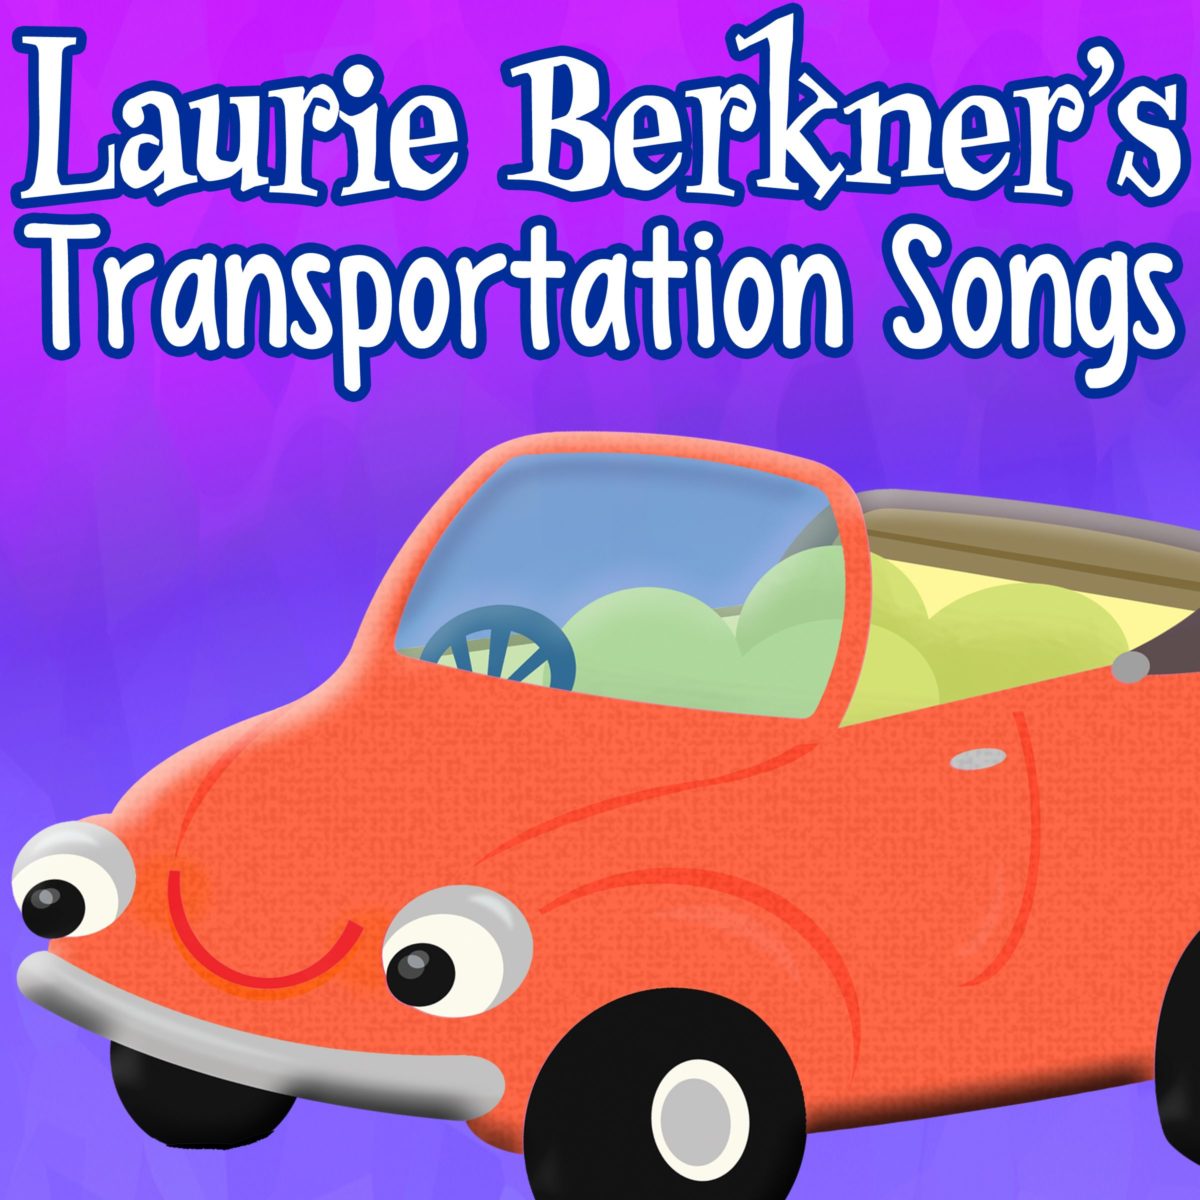 Laurie Berkner’s Transportation Songs